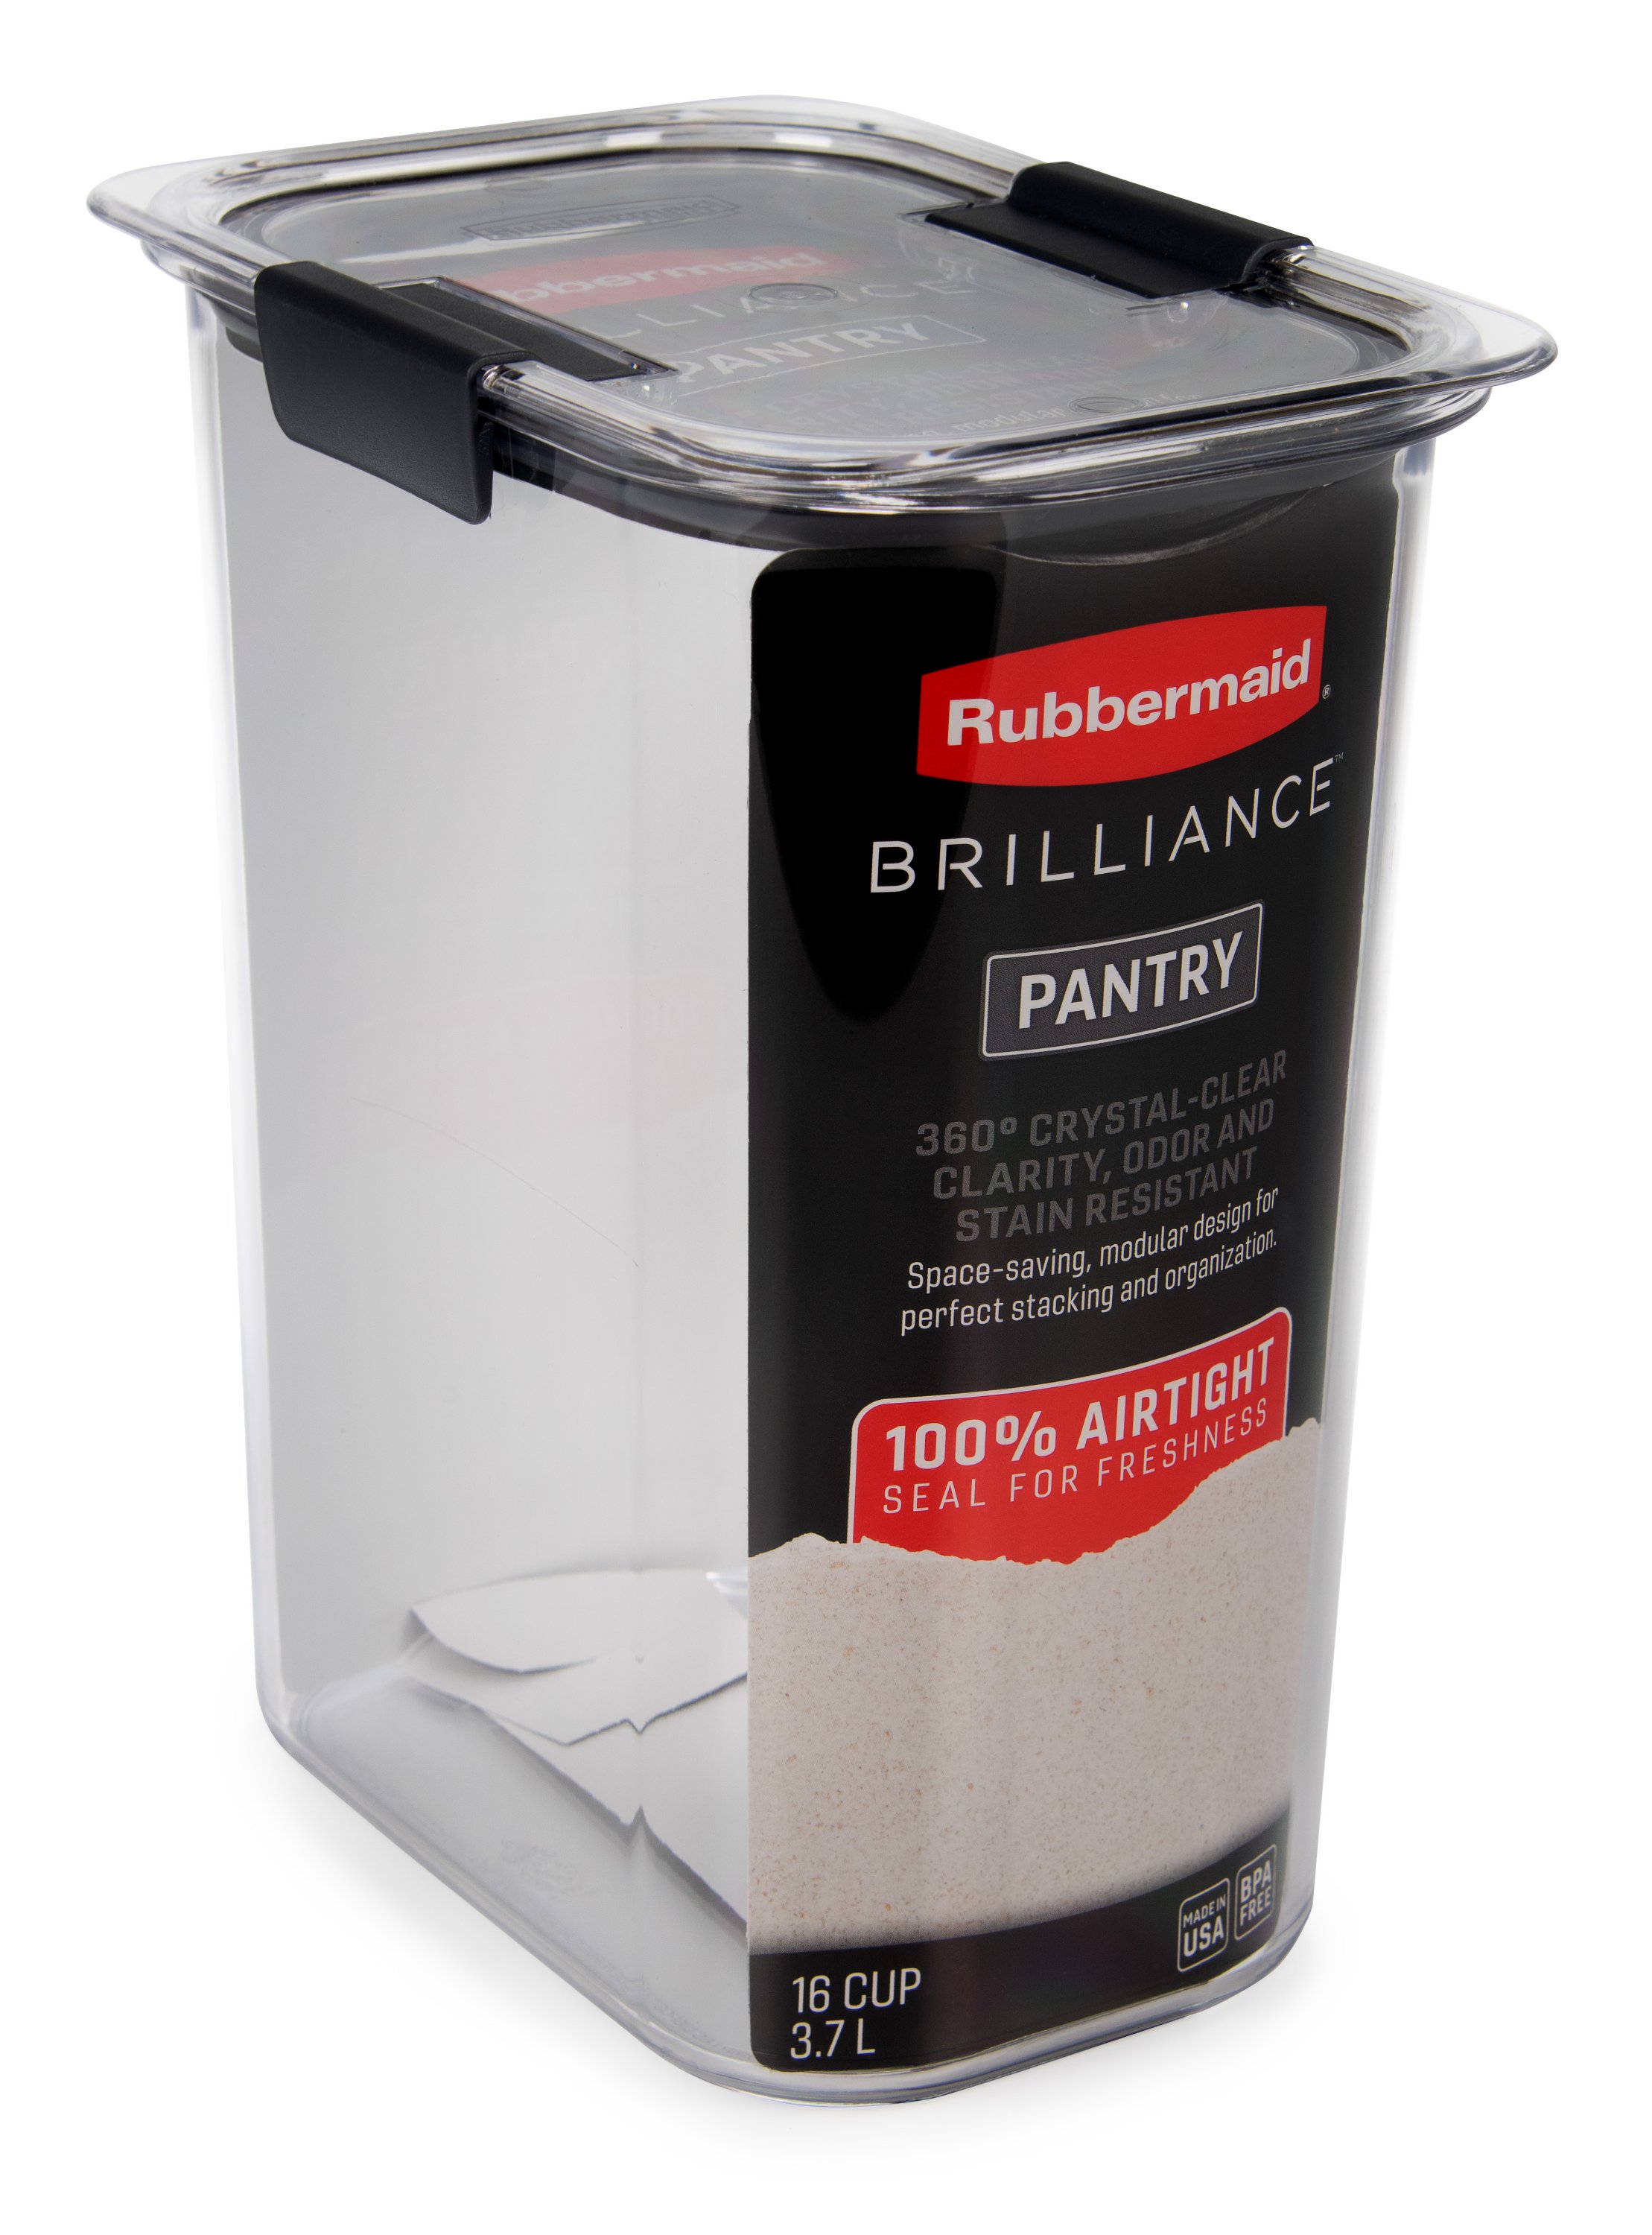 Rubbermaid Brilliance - Recipientes para almacenar alimentos con tapas;  almacena almuerzo, preparaciones y sobras, aptos para lavavajillas, diseño